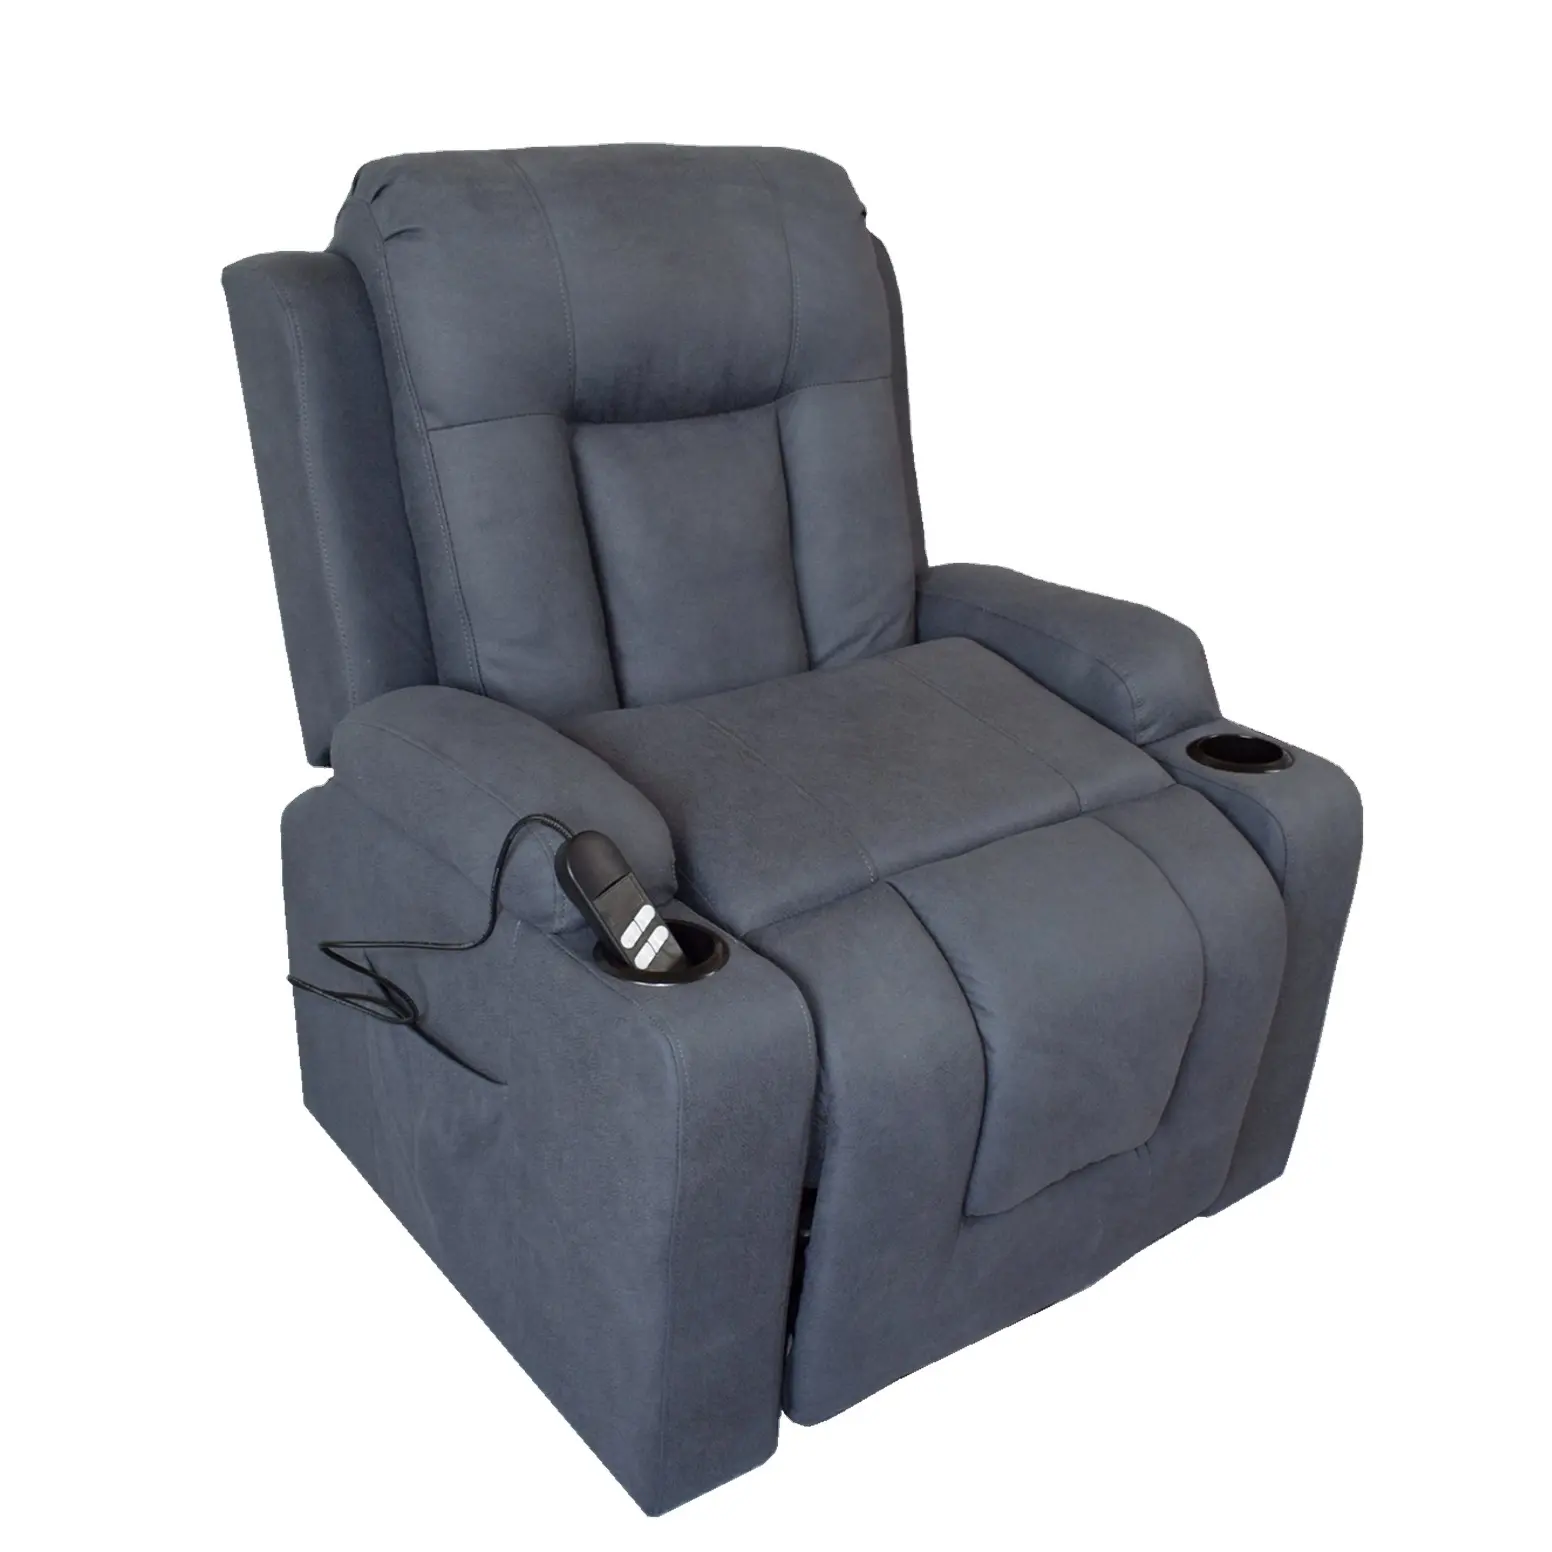 Clducjky — meuble inclinable à 4 positions, dernier modèle du monde, pratique et innovant sur le marché, nouveauté